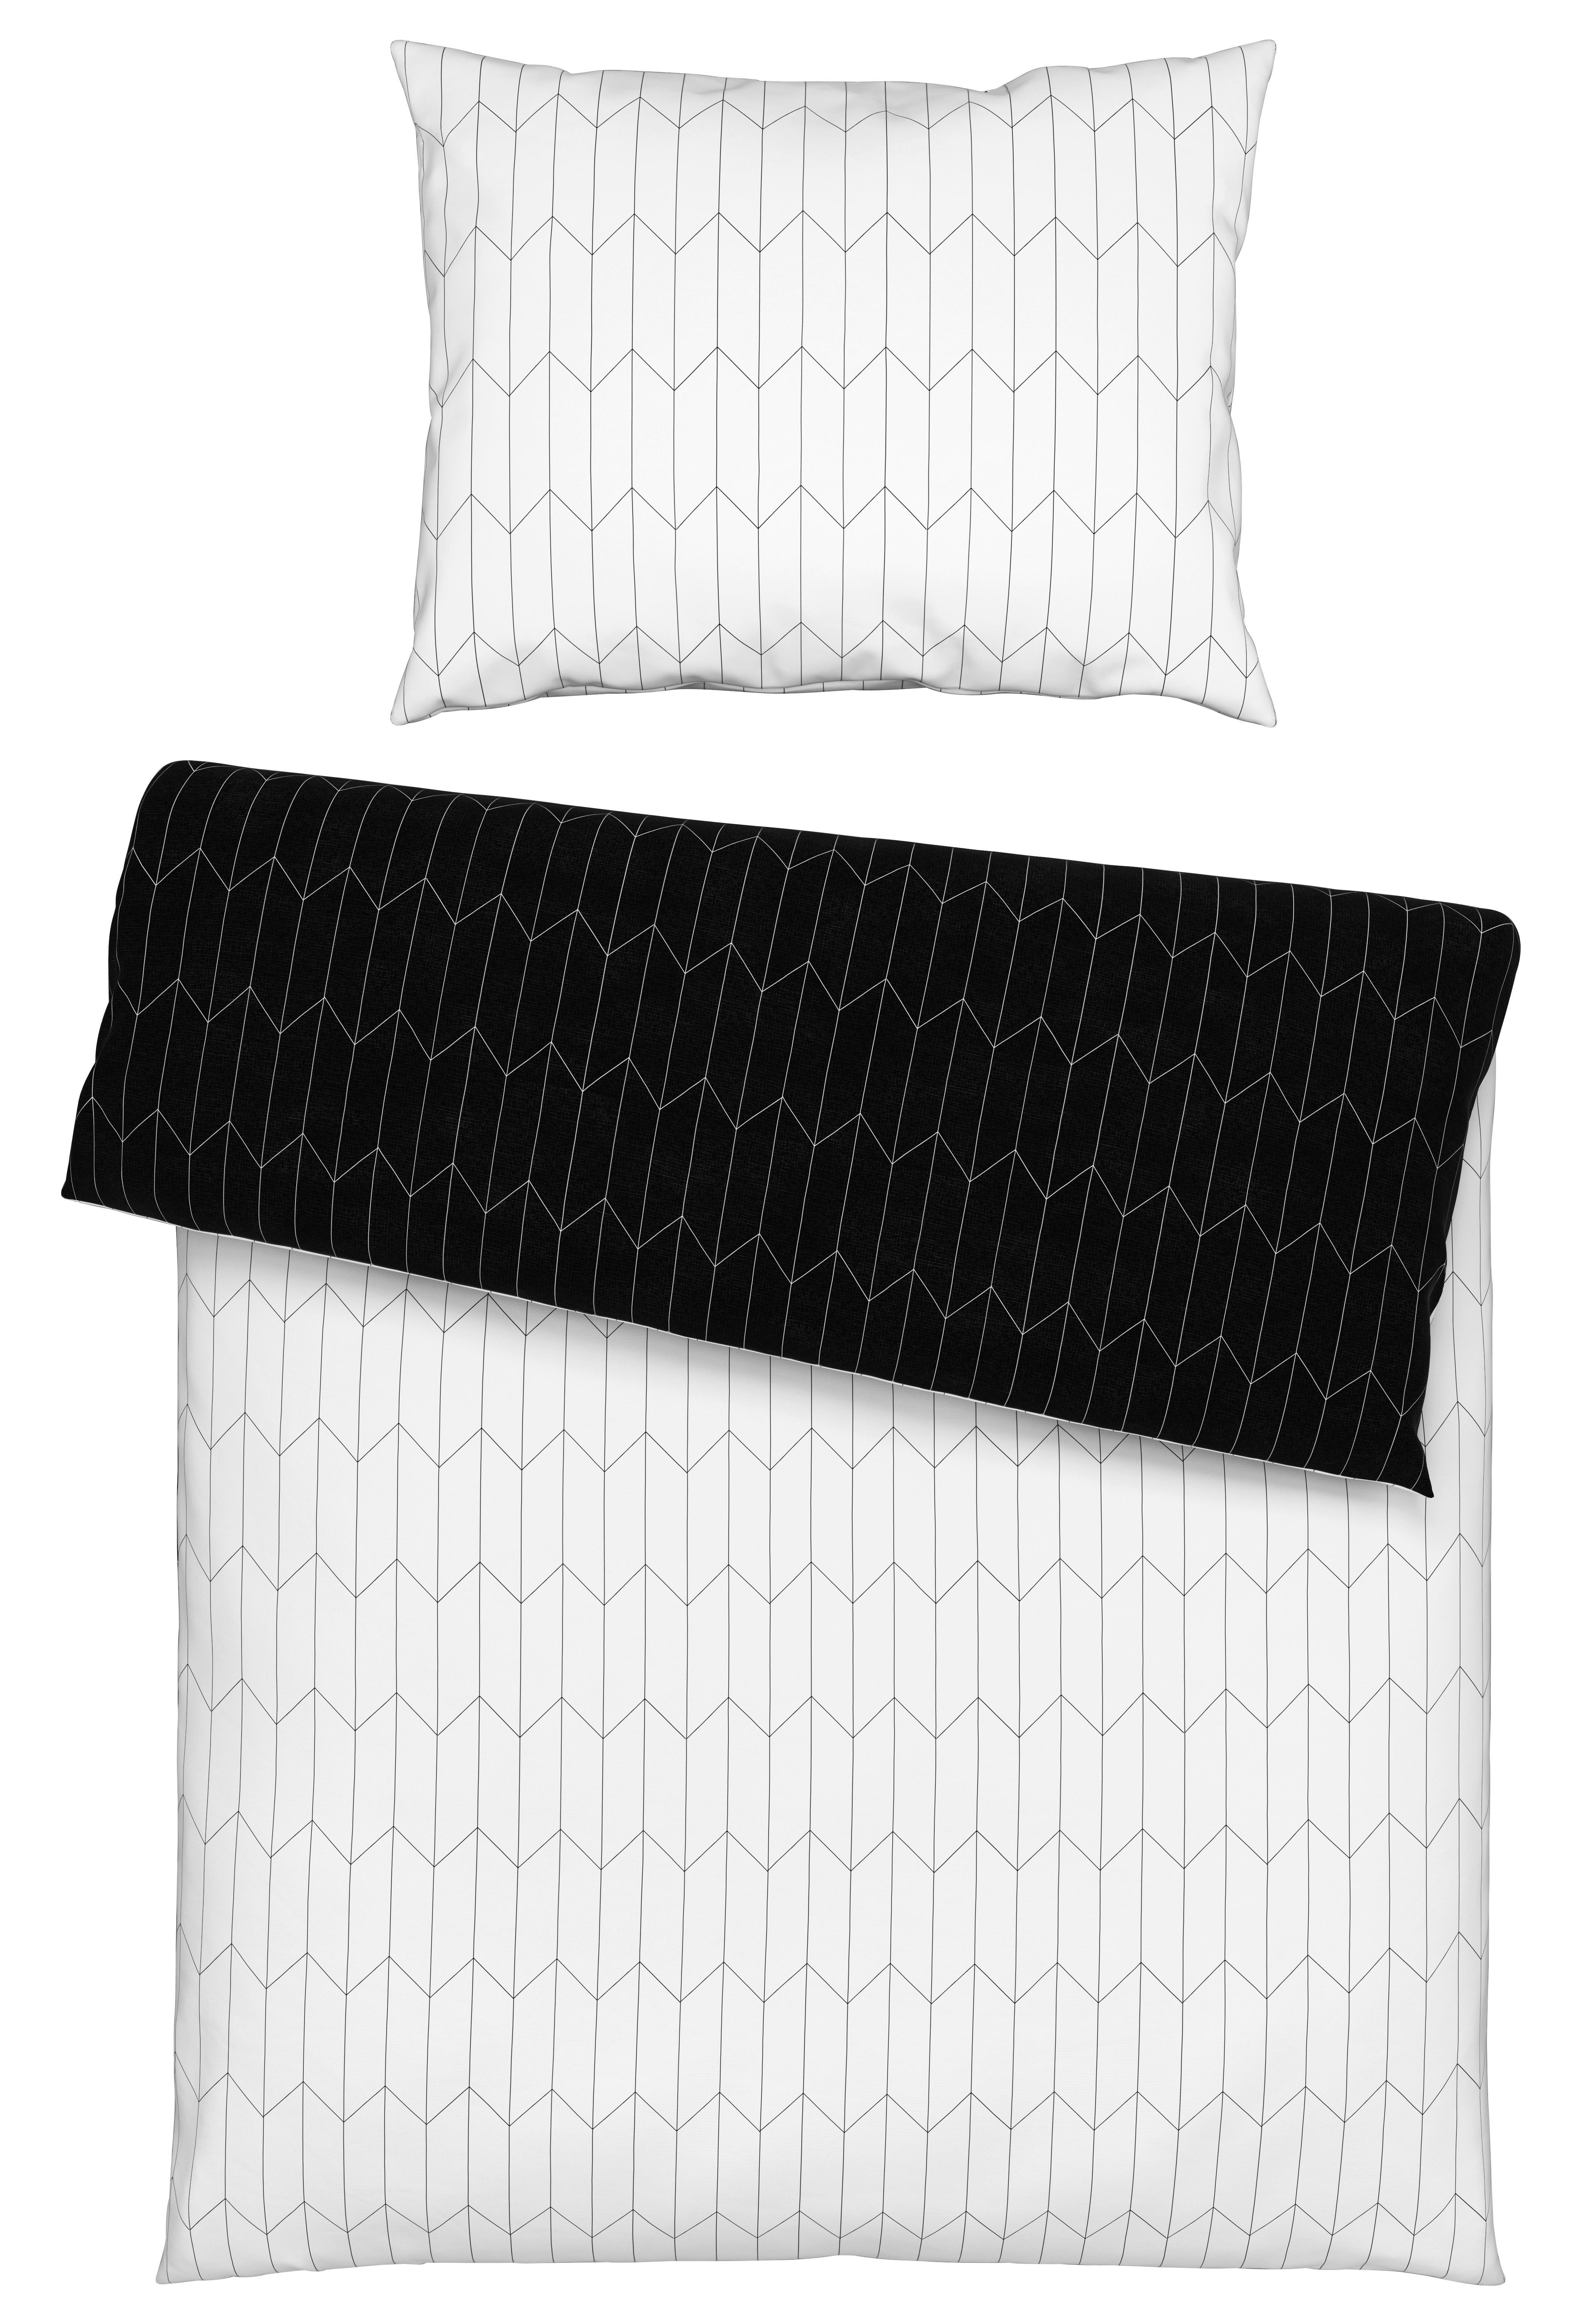 Bettwäsche Tegola in Schwarz/Weiß ca. 140x200cm - Schwarz/Weiß, MODERN, Textil (140/200cm) - Modern Living